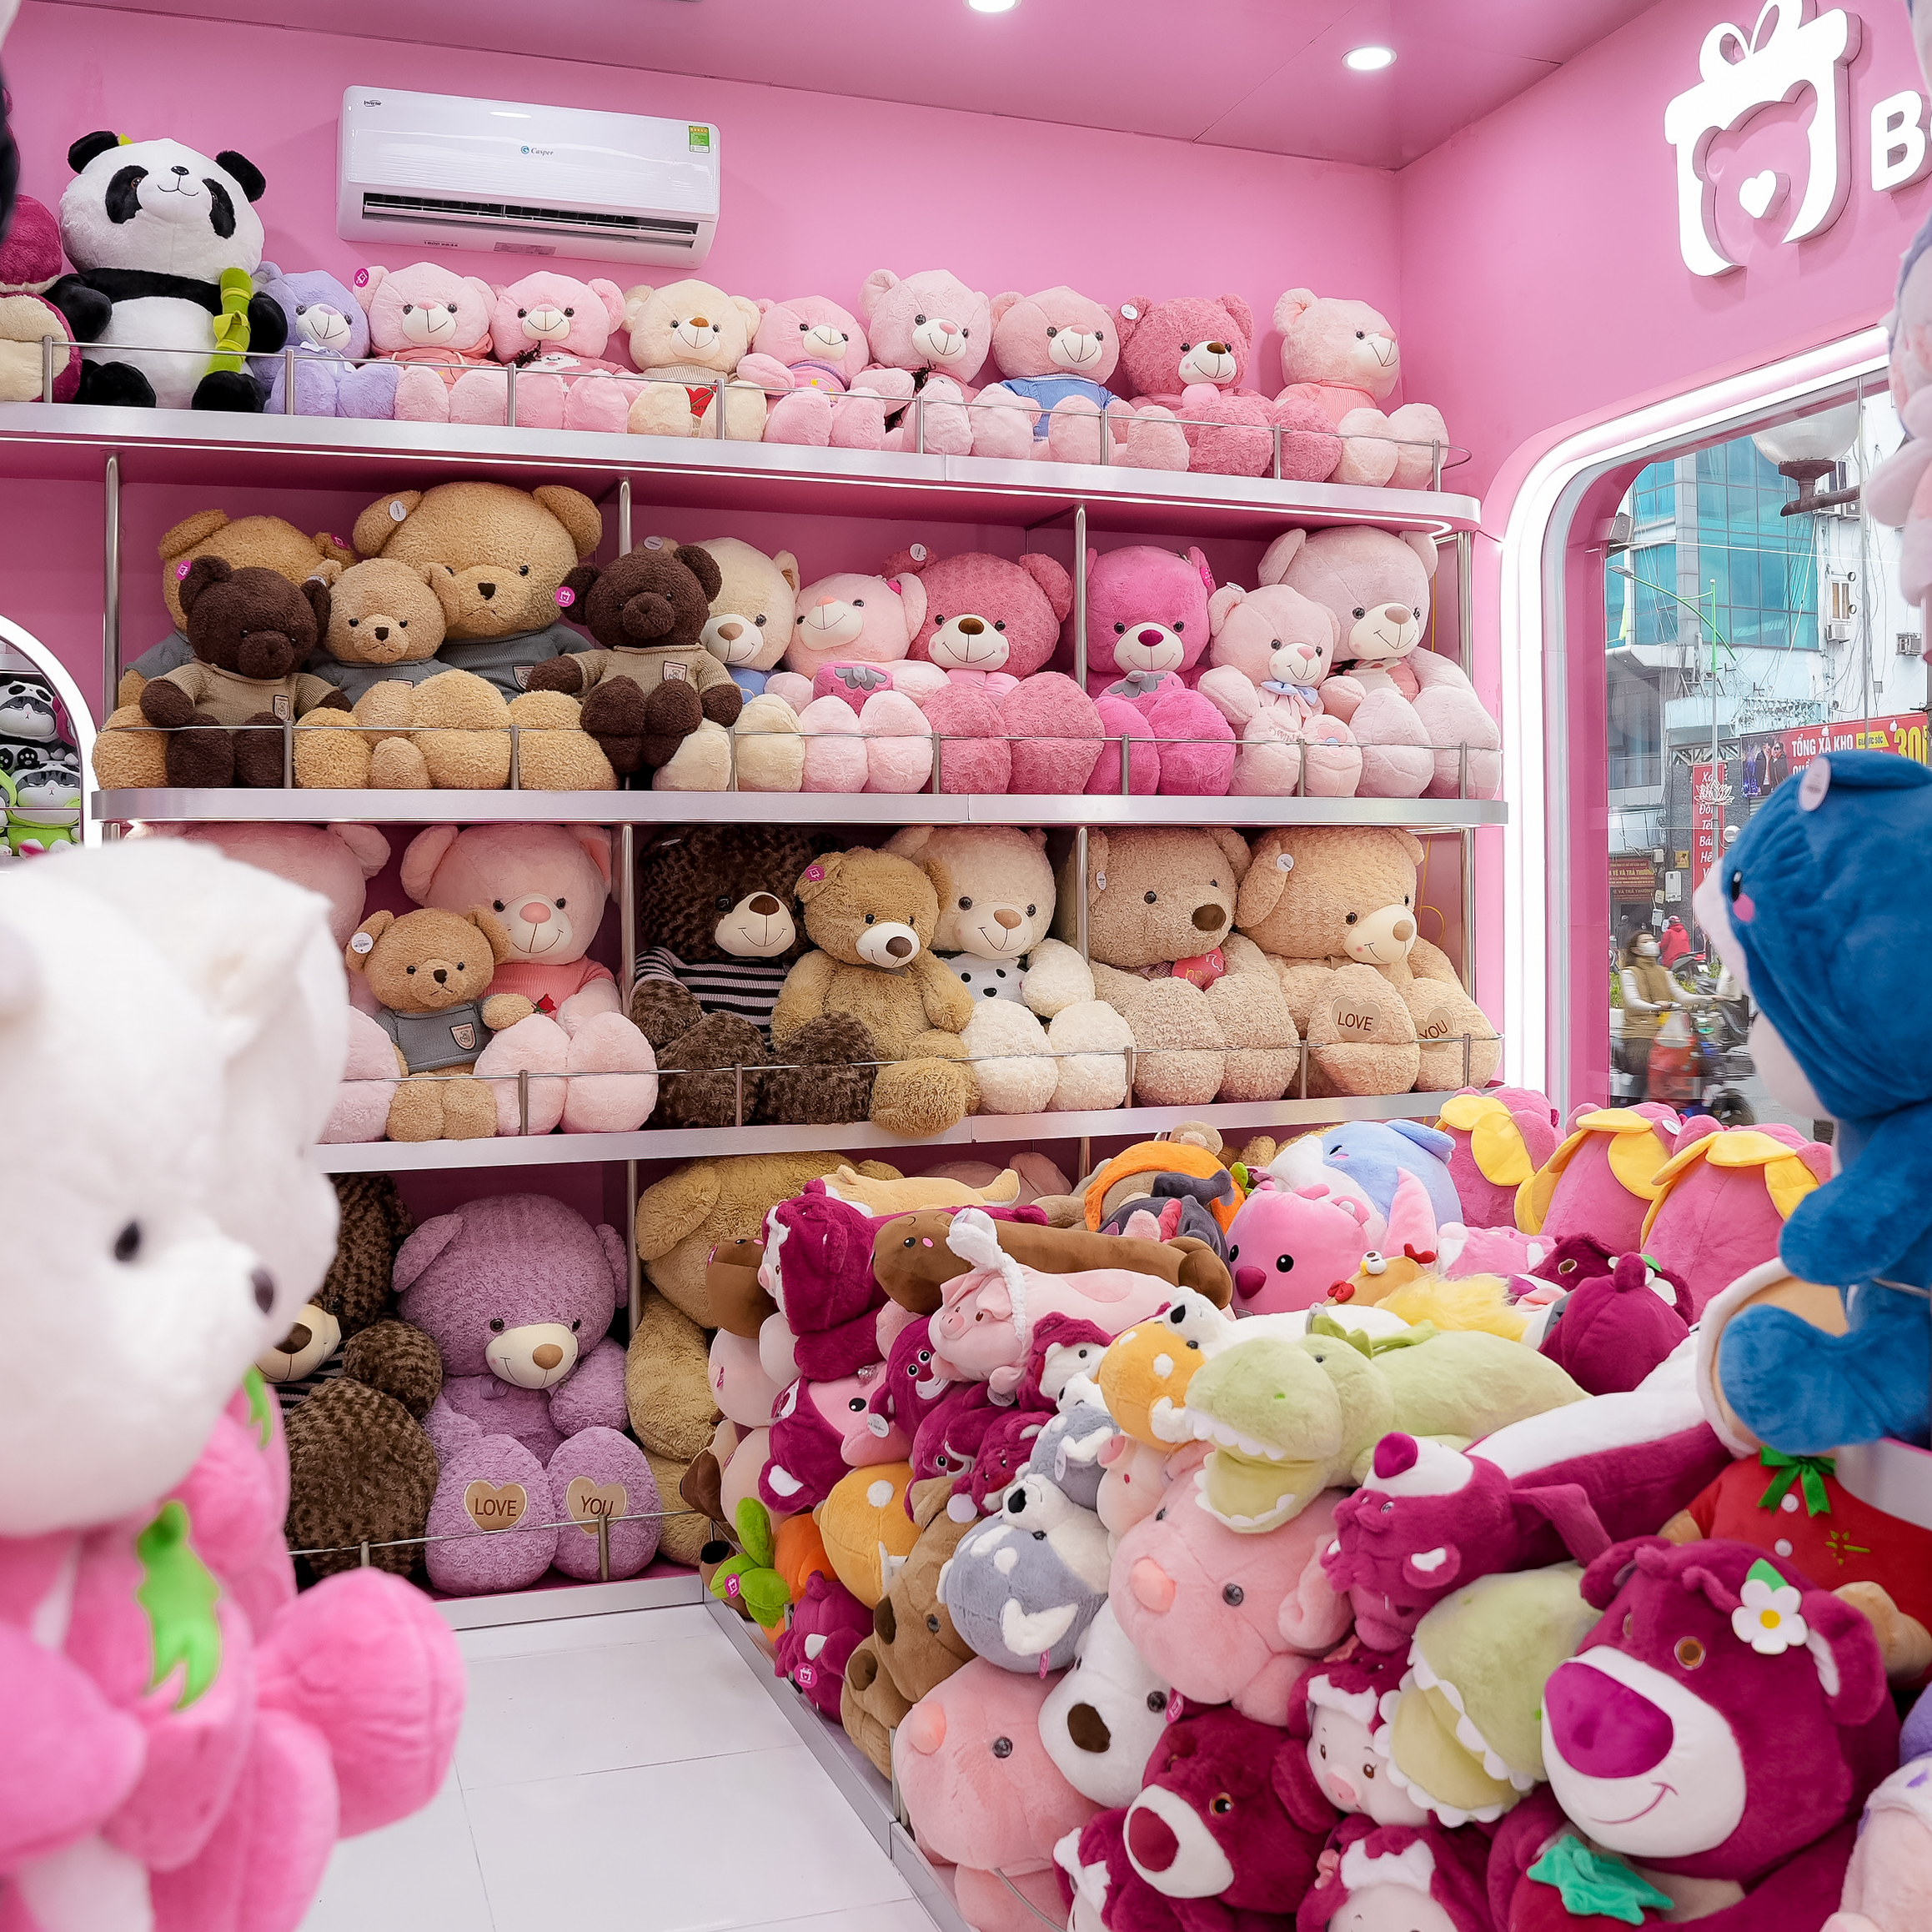 Shop gấu bông giá rẻ tại Hà Nội Bemori